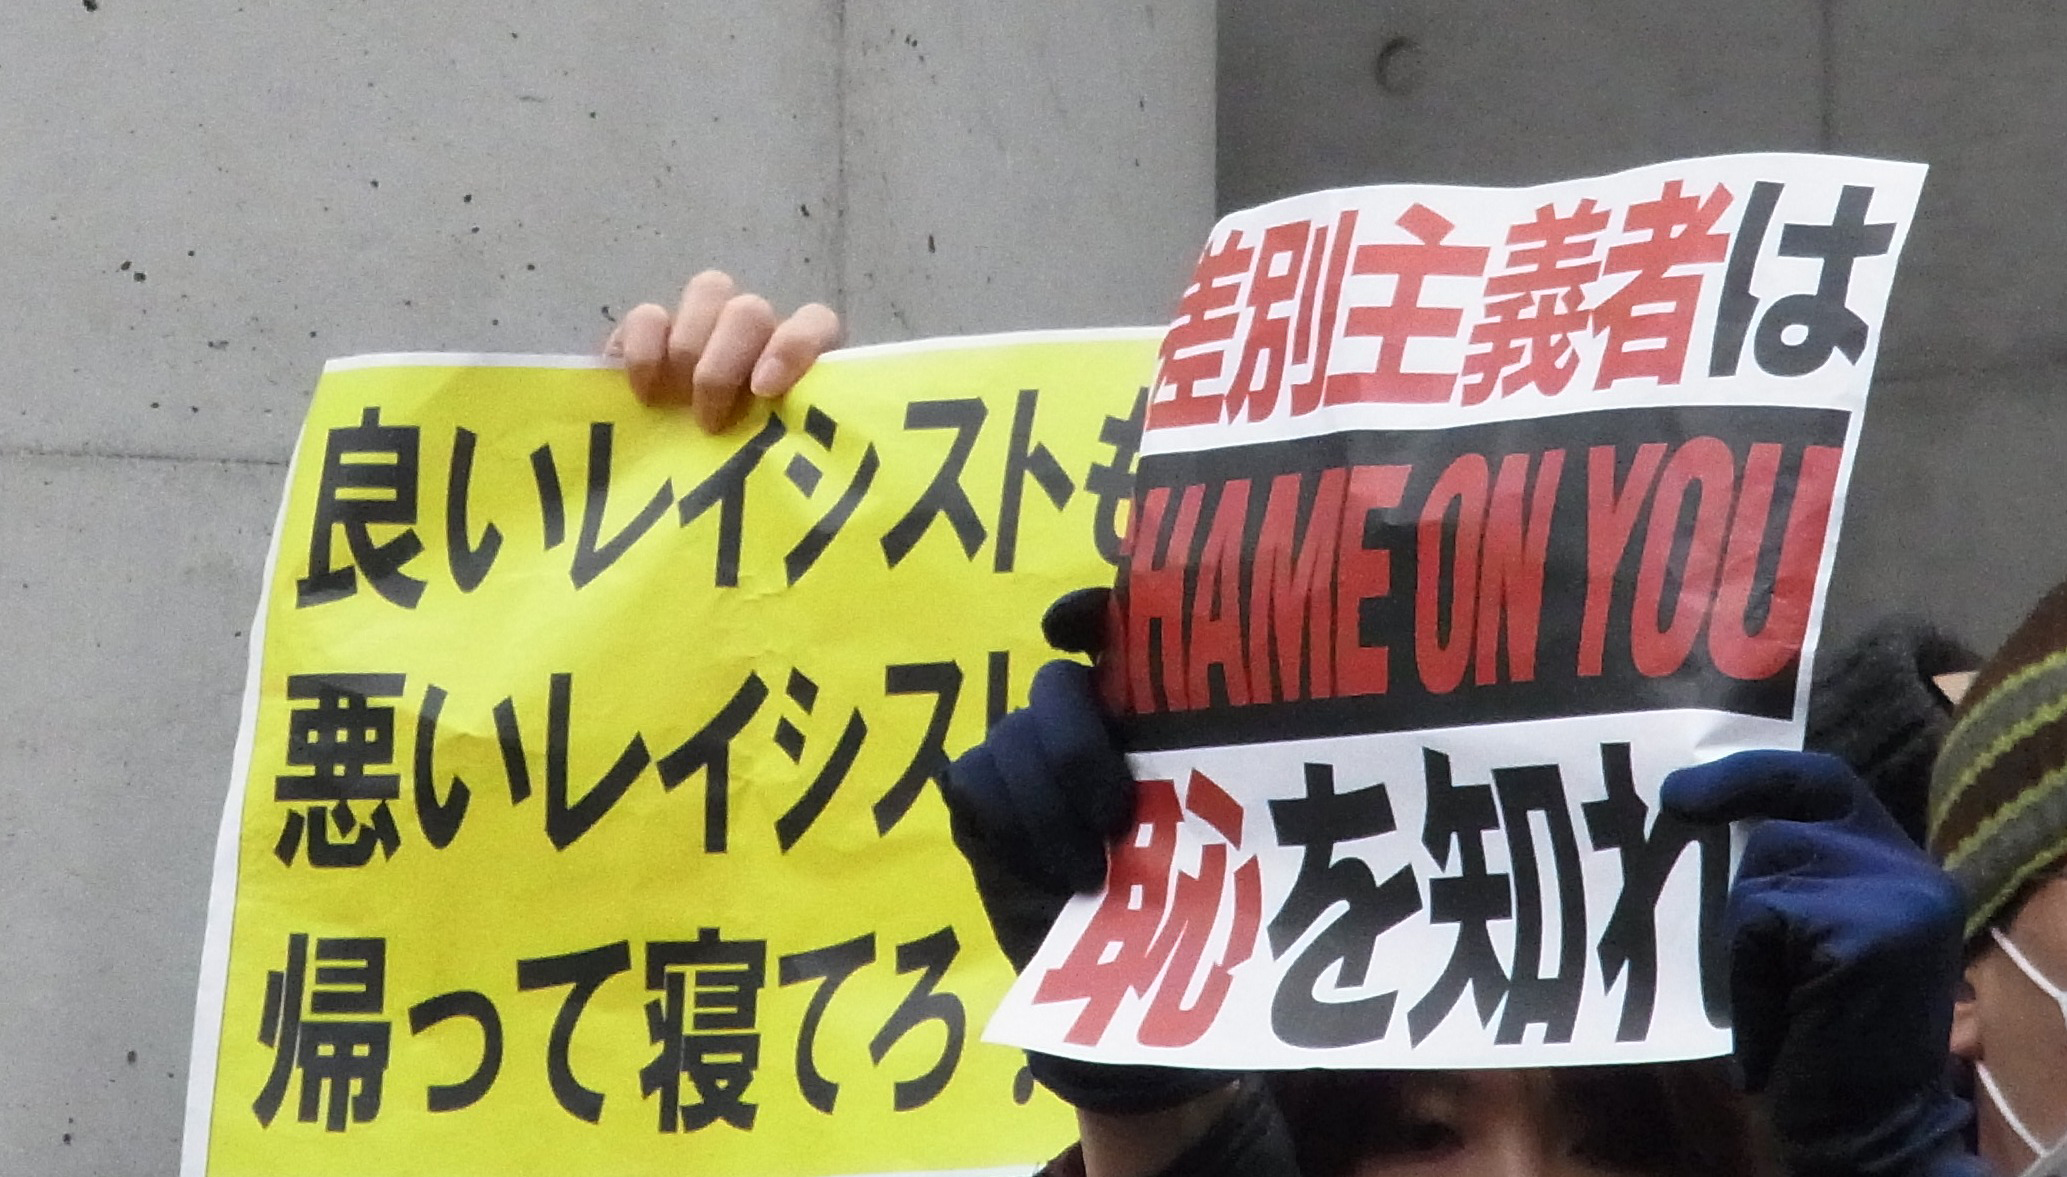 嫌韓デモに抗議活動活発化 日本も捨てたものじゃない の声 Newsポストセブン